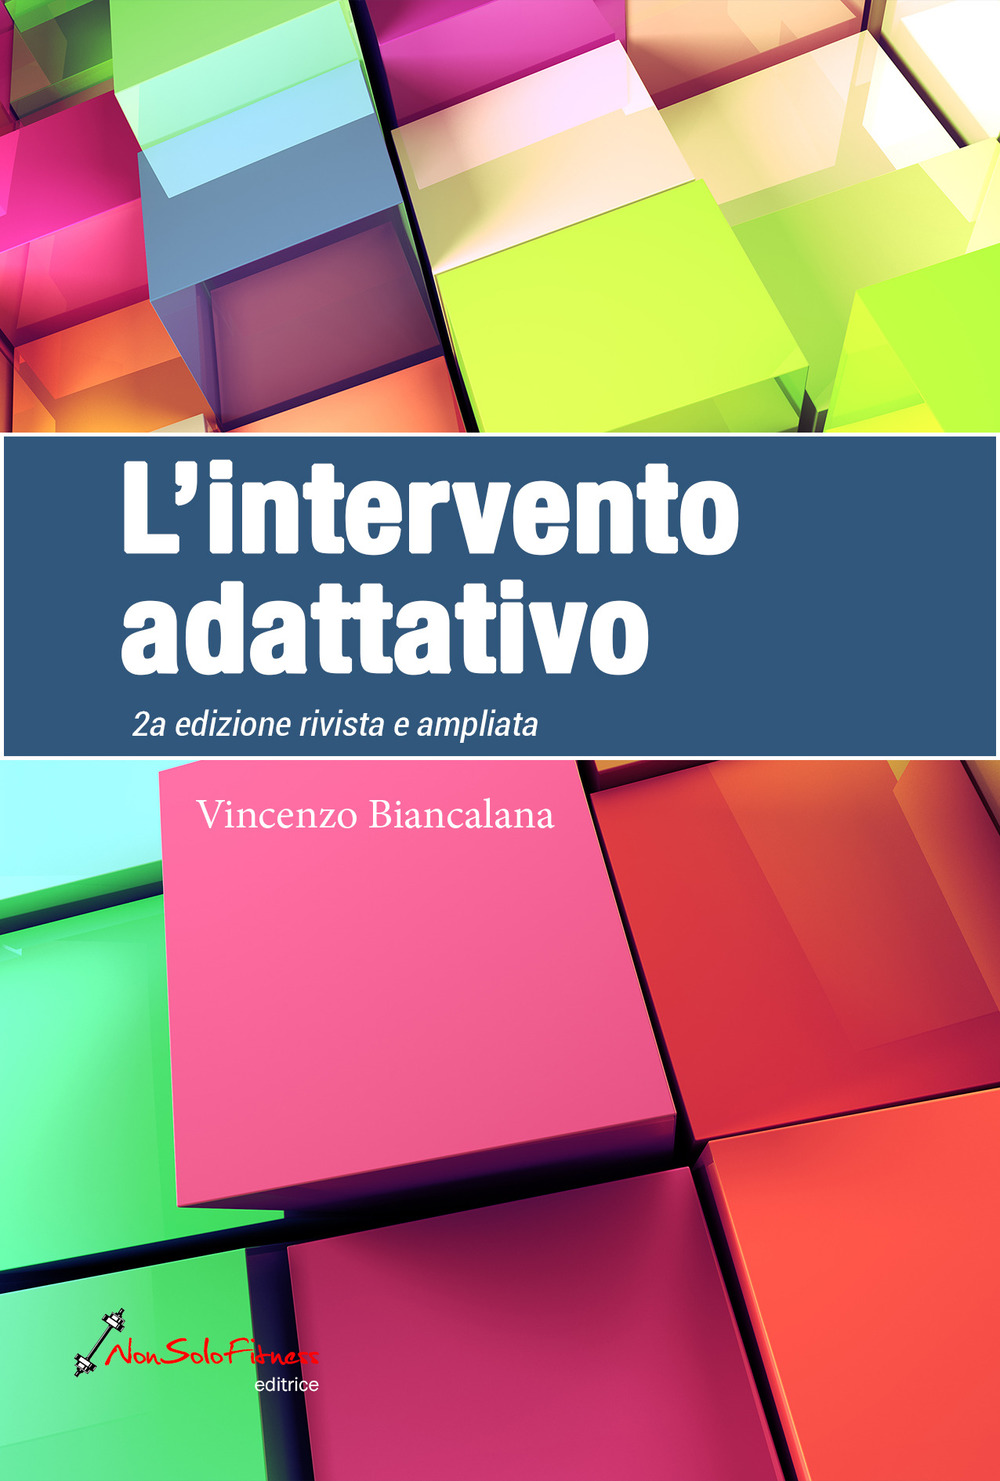 Libri Vincenzo Biancalana - L' Intervento Adattivo NUOVO SIGILLATO, EDIZIONE DEL 15/09/2019 SUBITO DISPONIBILE